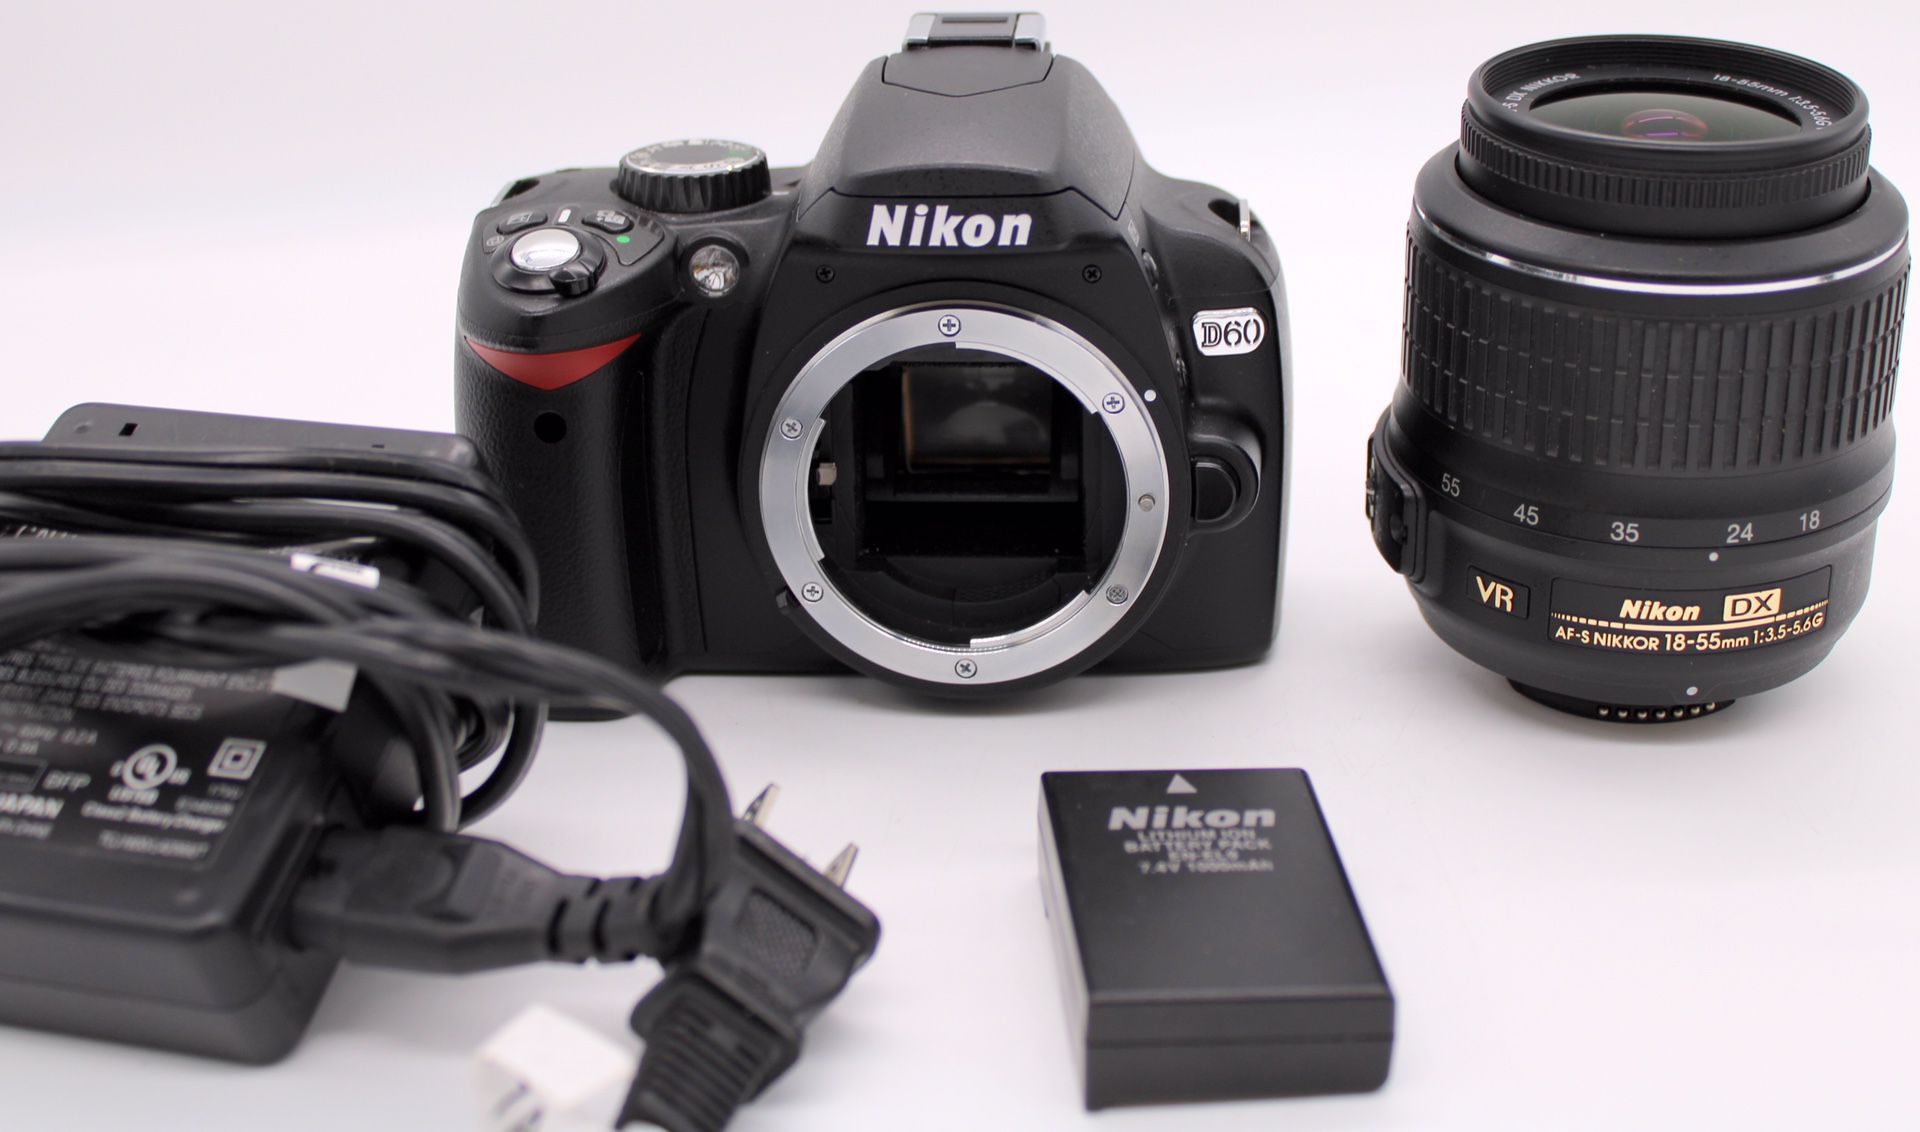 Nikon D60 DSLR Camera w/ 18-55mm f/3.5-5.6G AF-S Nikkor Zoom Lens Plus Extras 8.5k Shutter Count, LIKE NEW.